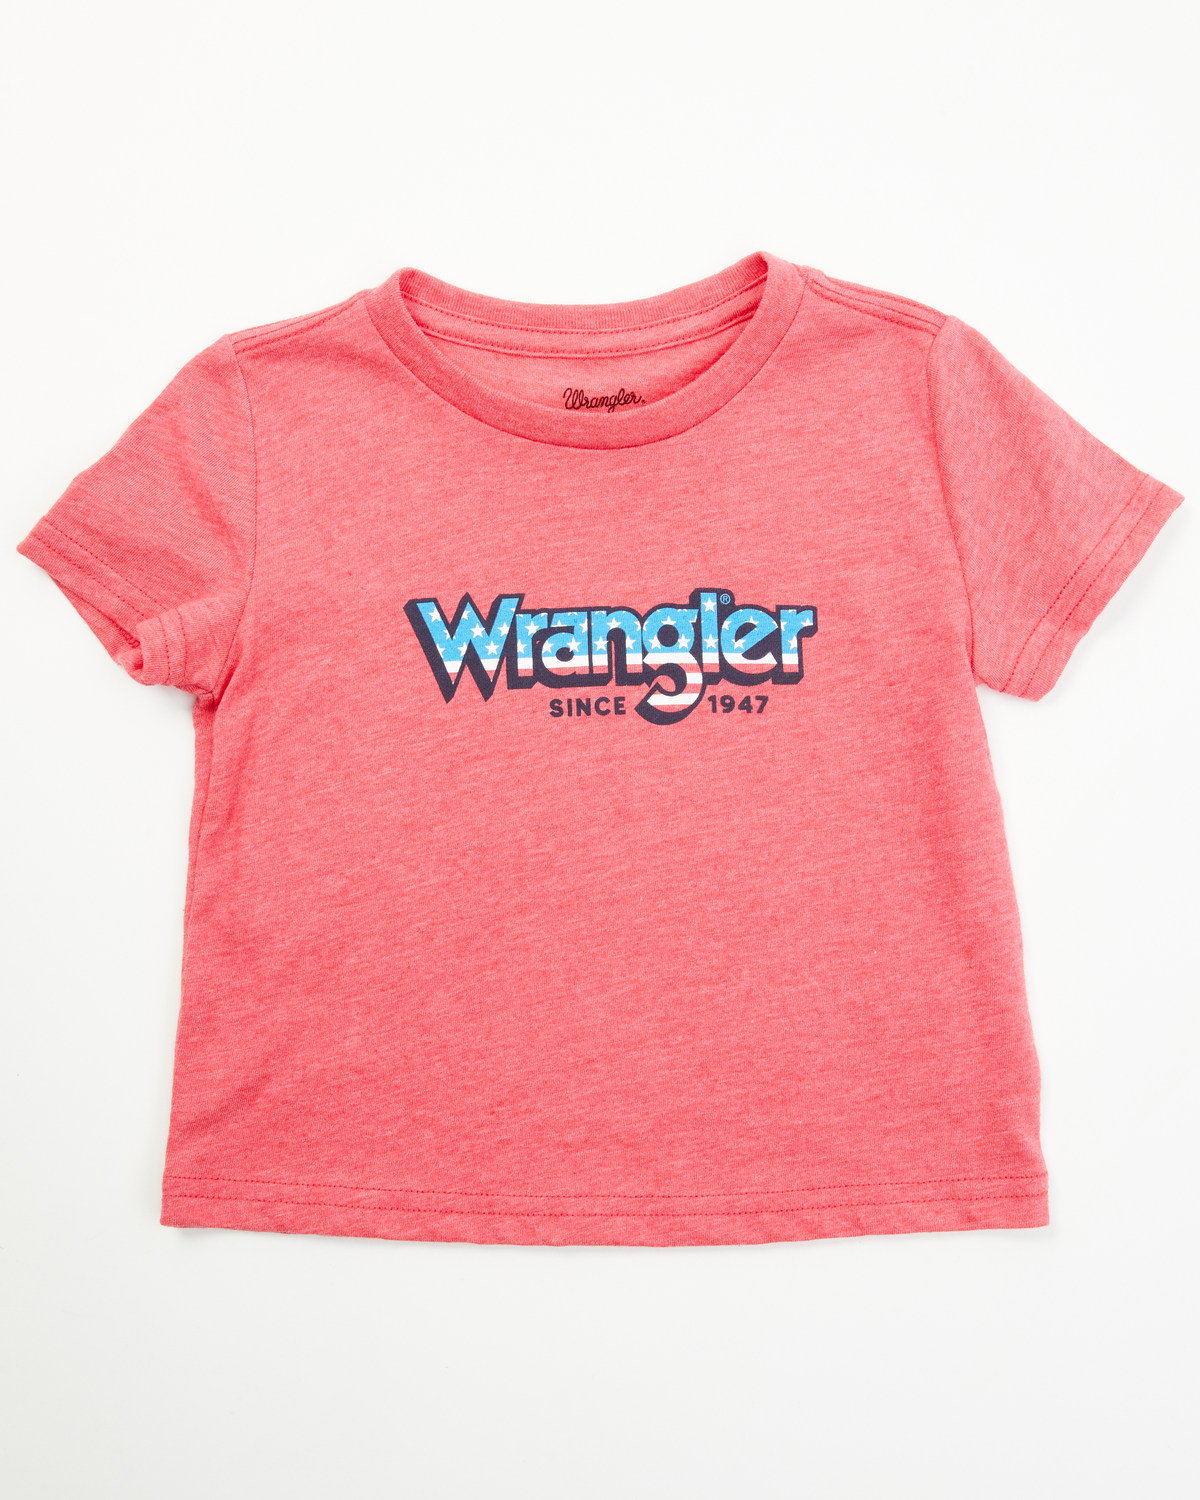 Wrangler Toddler Boys' Stars And Stripes Logo Short Sleeve T-Shirt